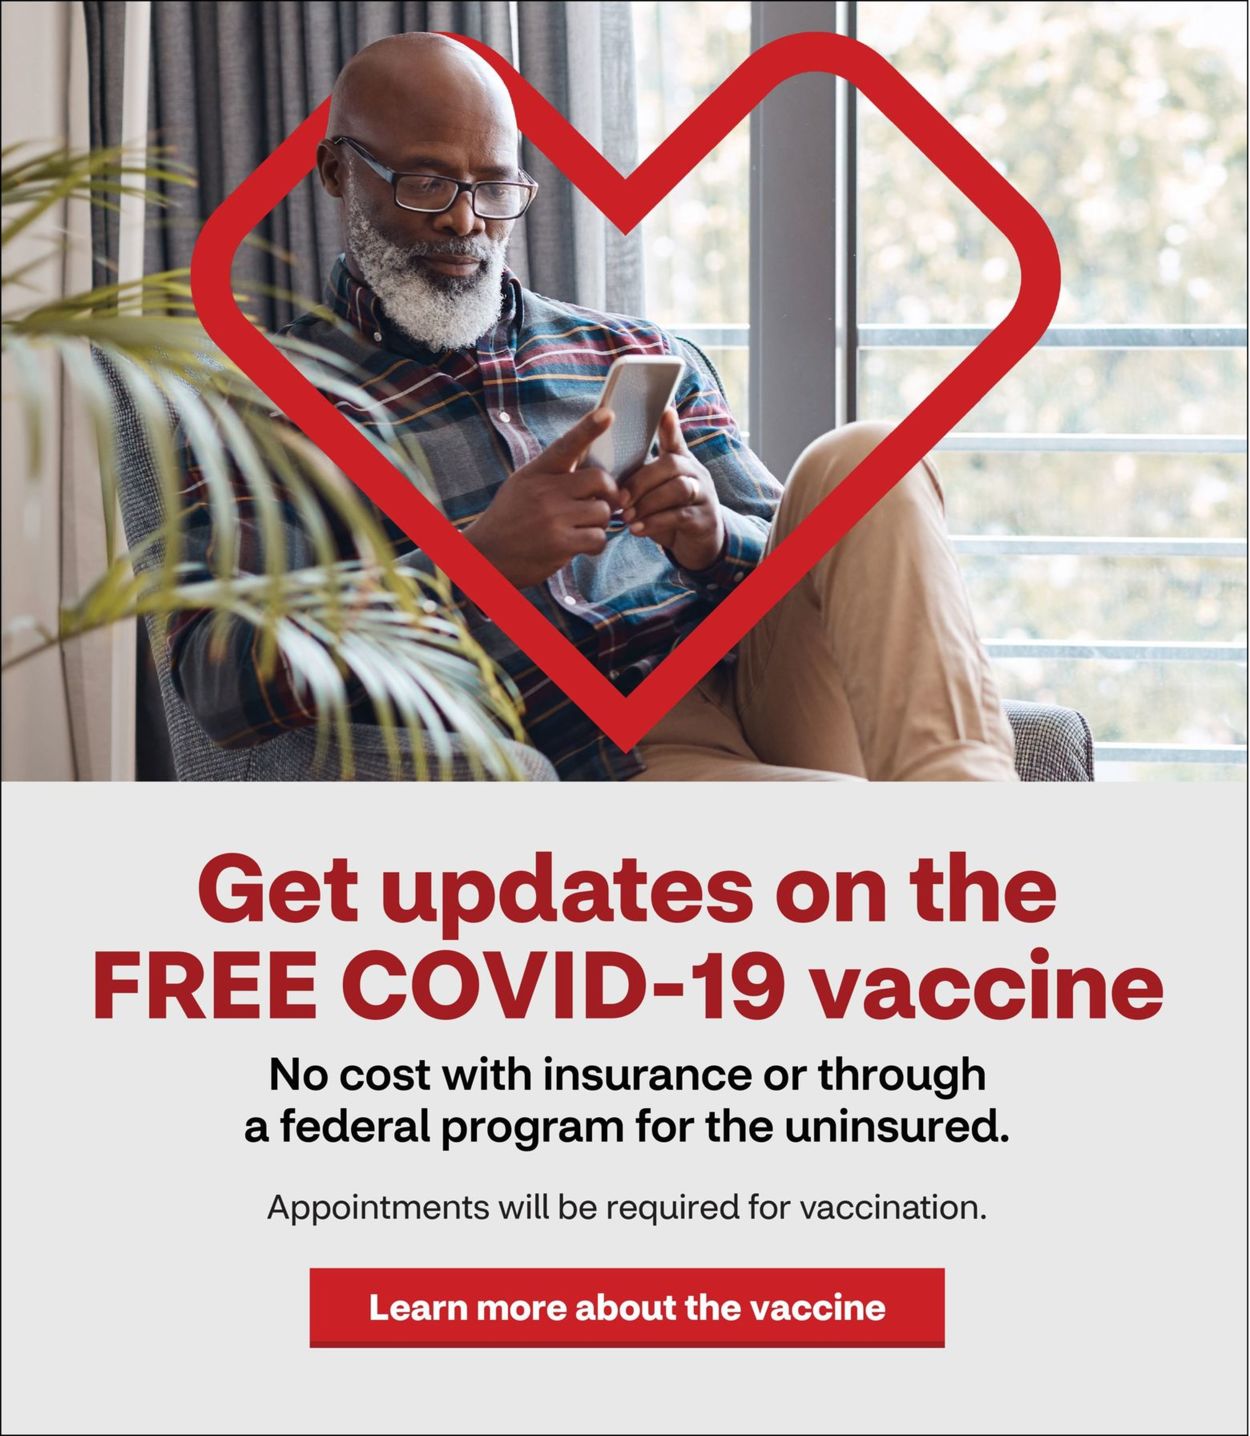 CVS Pharmacy Ad from 05/02/2021